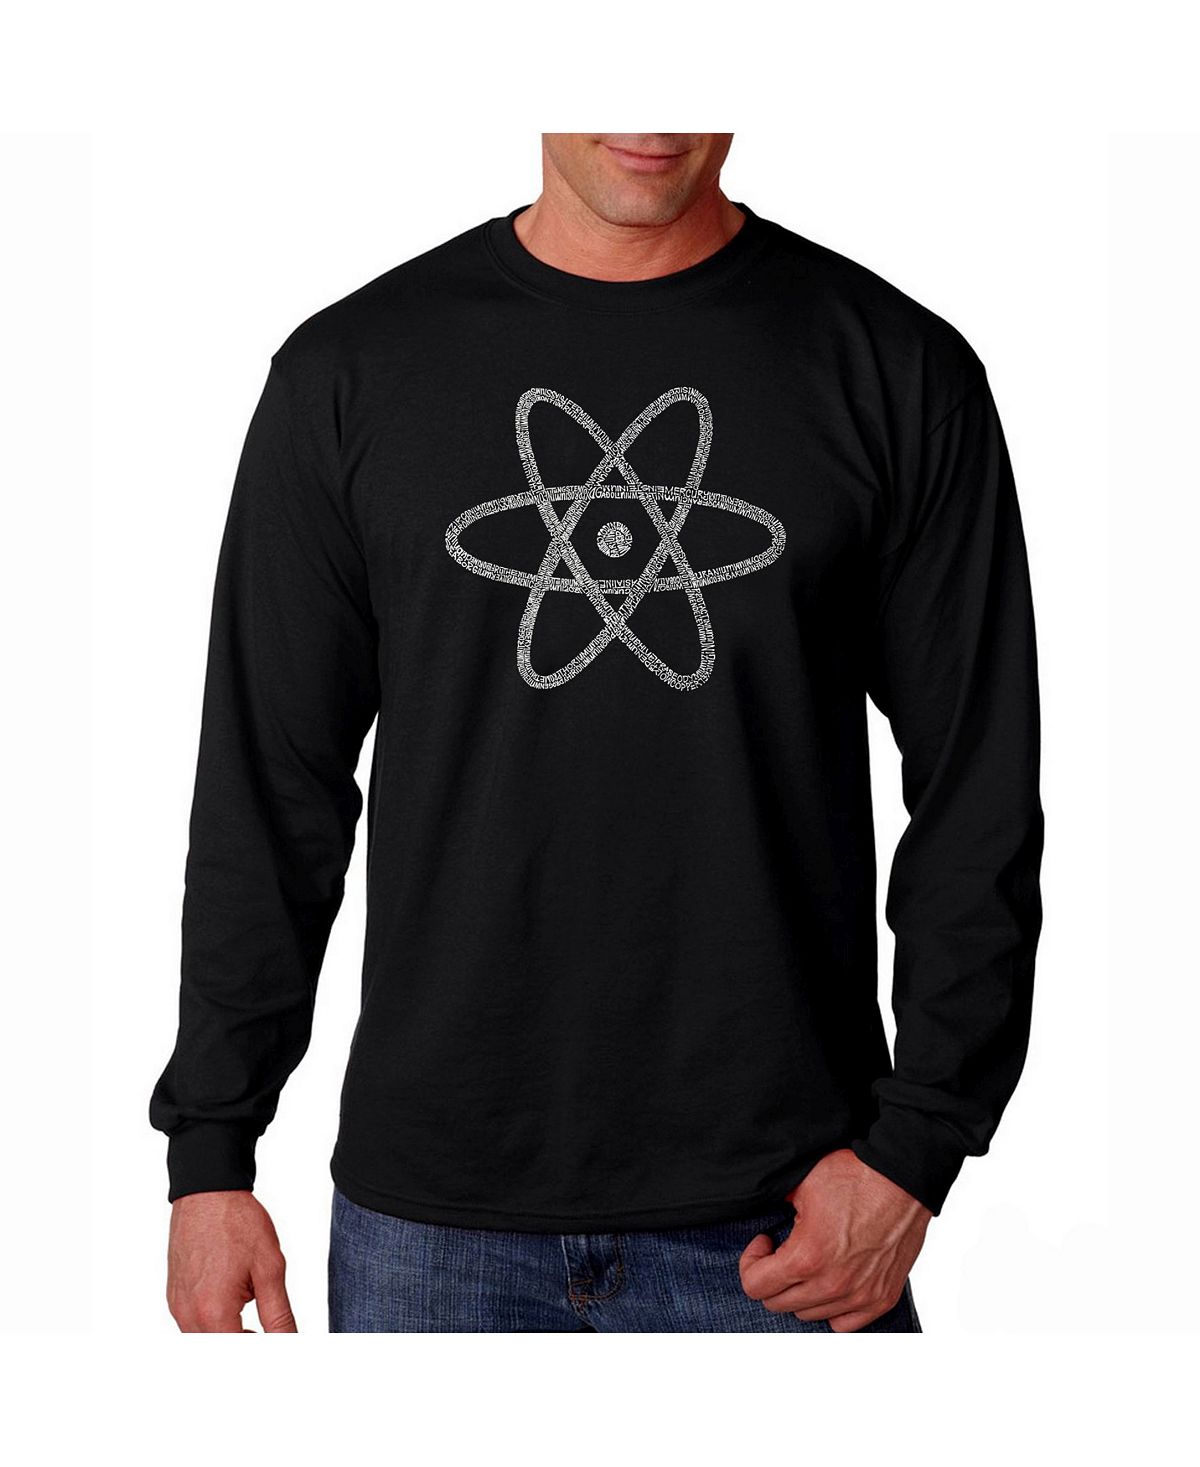 Мужская футболка с длинным рукавом word art - atom LA Pop Art, черный